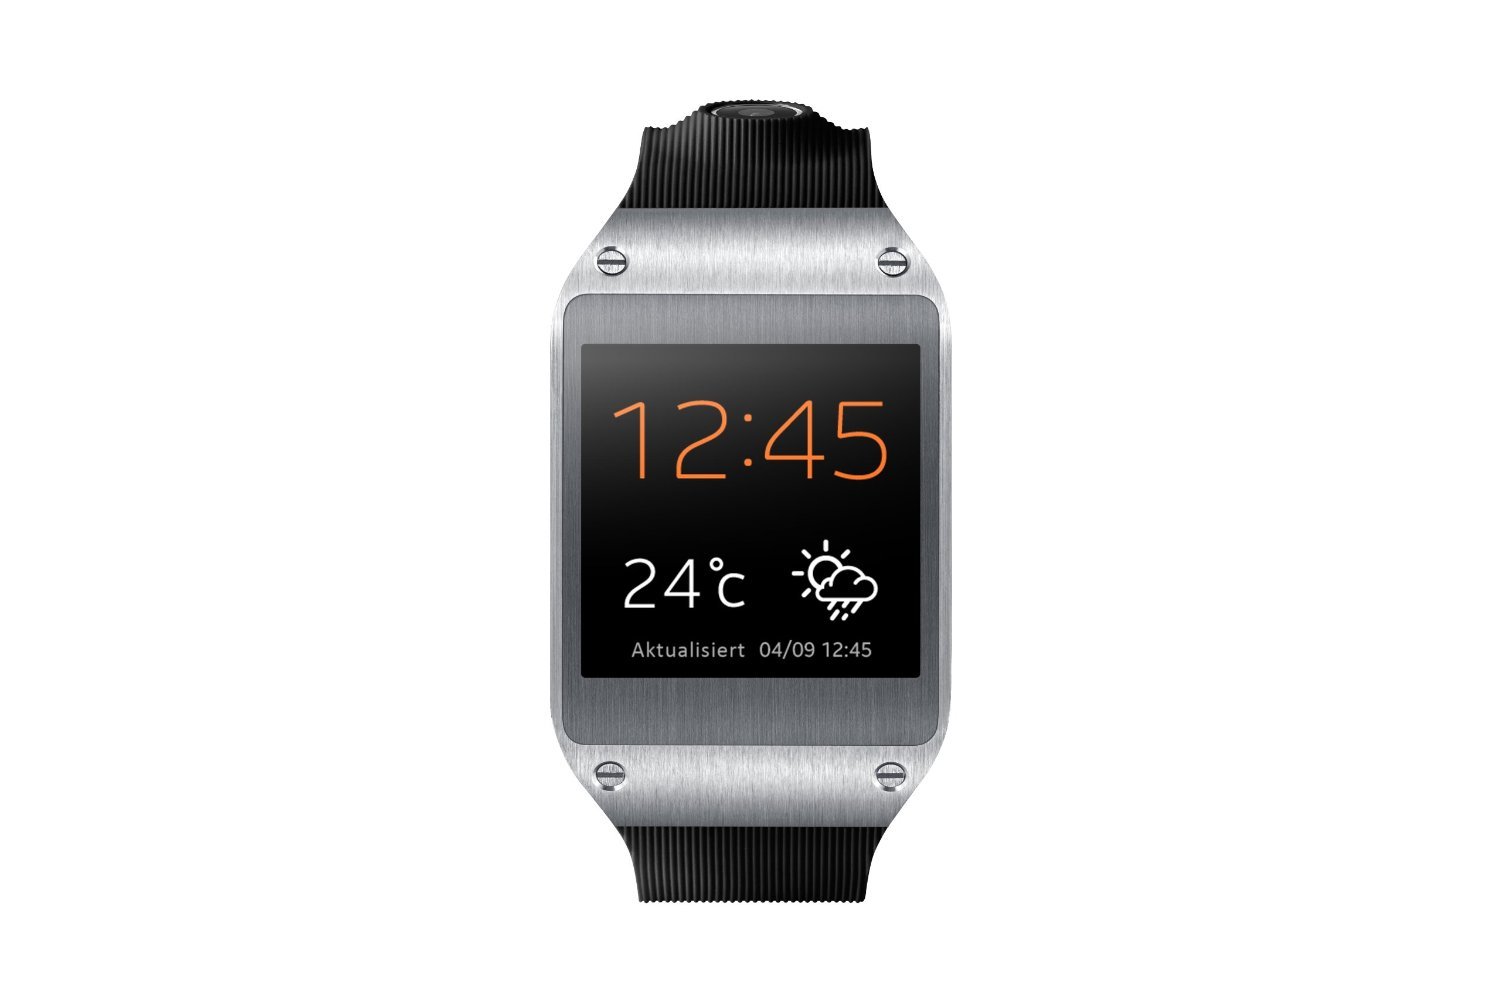 Samsung Galaxy Gear: Samsung Smartwatch größter Flop des Jahres? 6